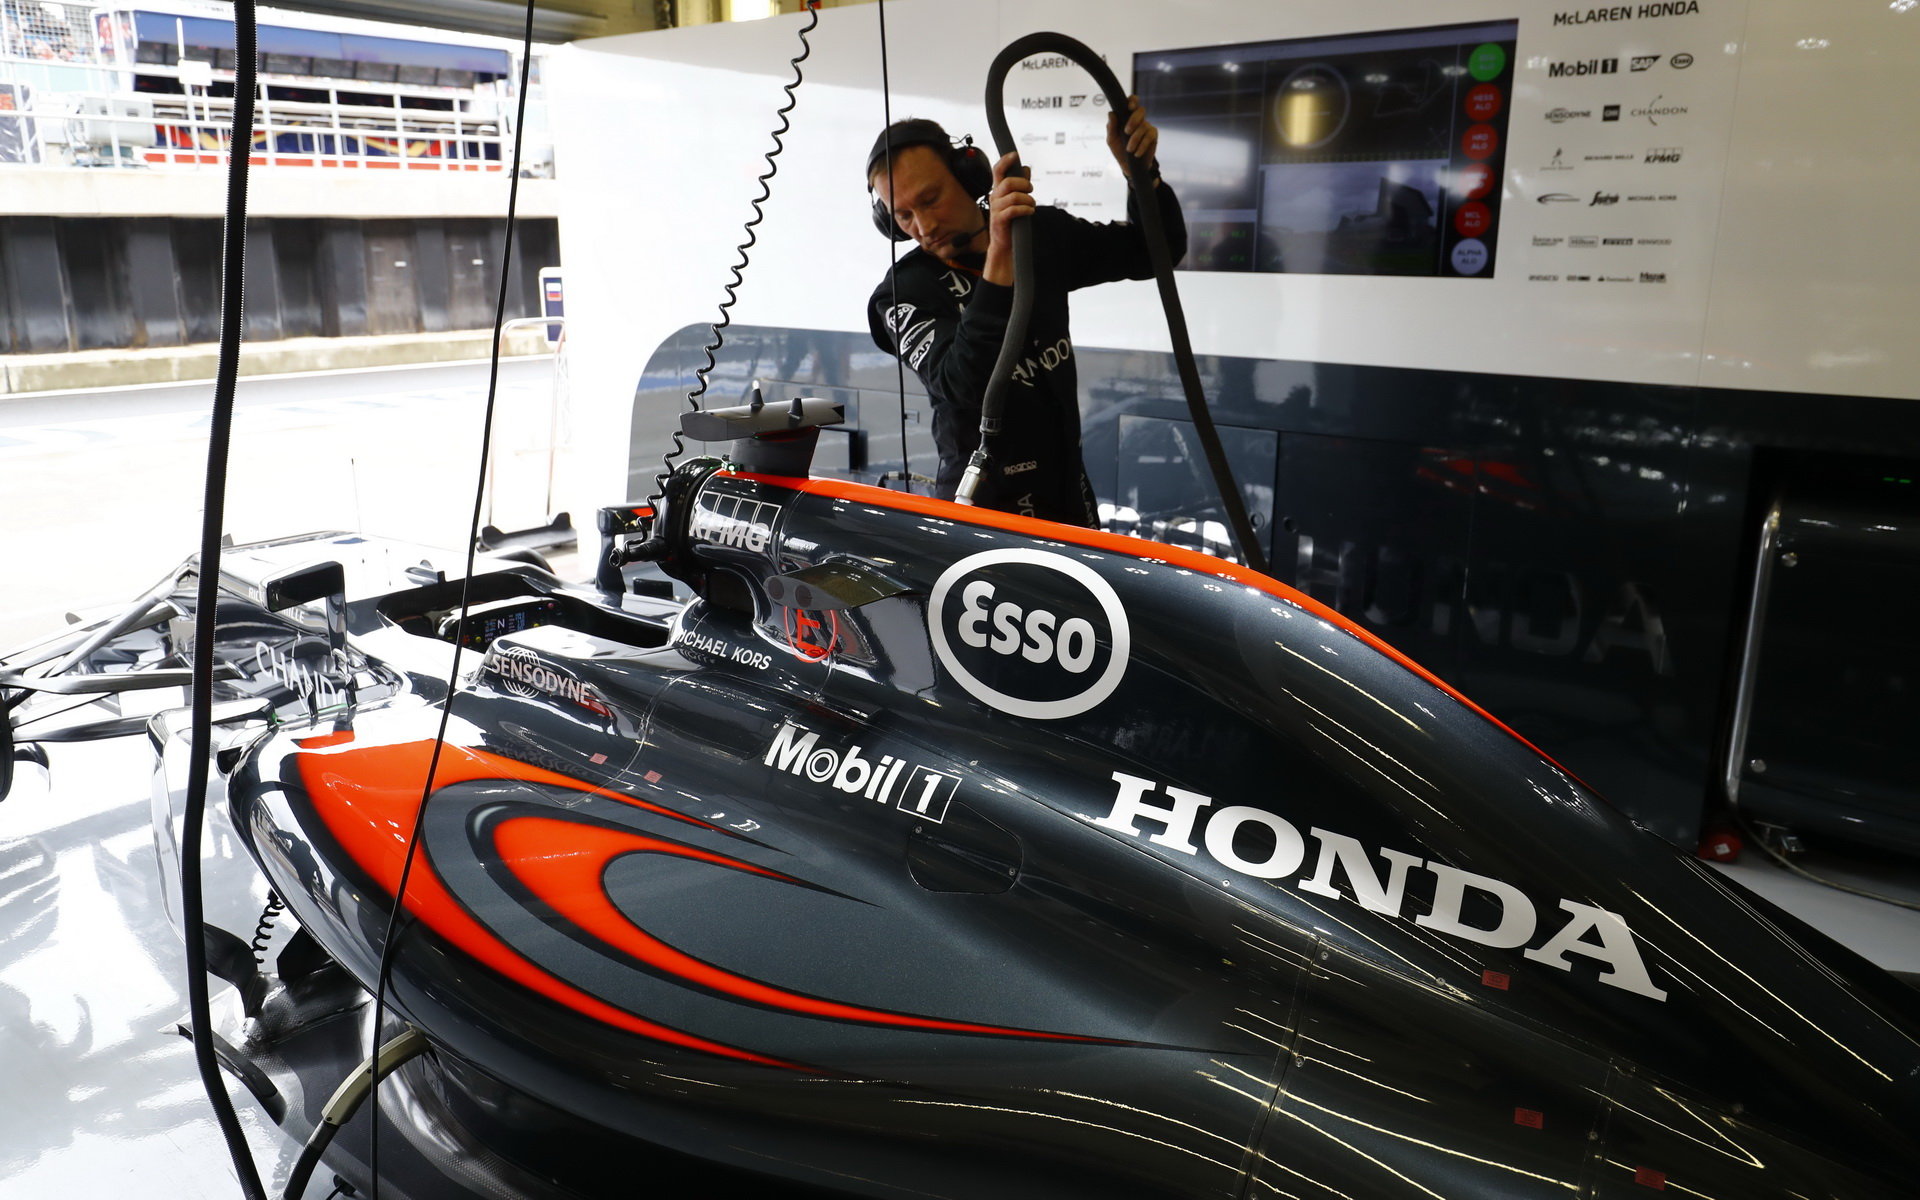 Spolupráce s Hondou se podle McLarenu zlepšuje